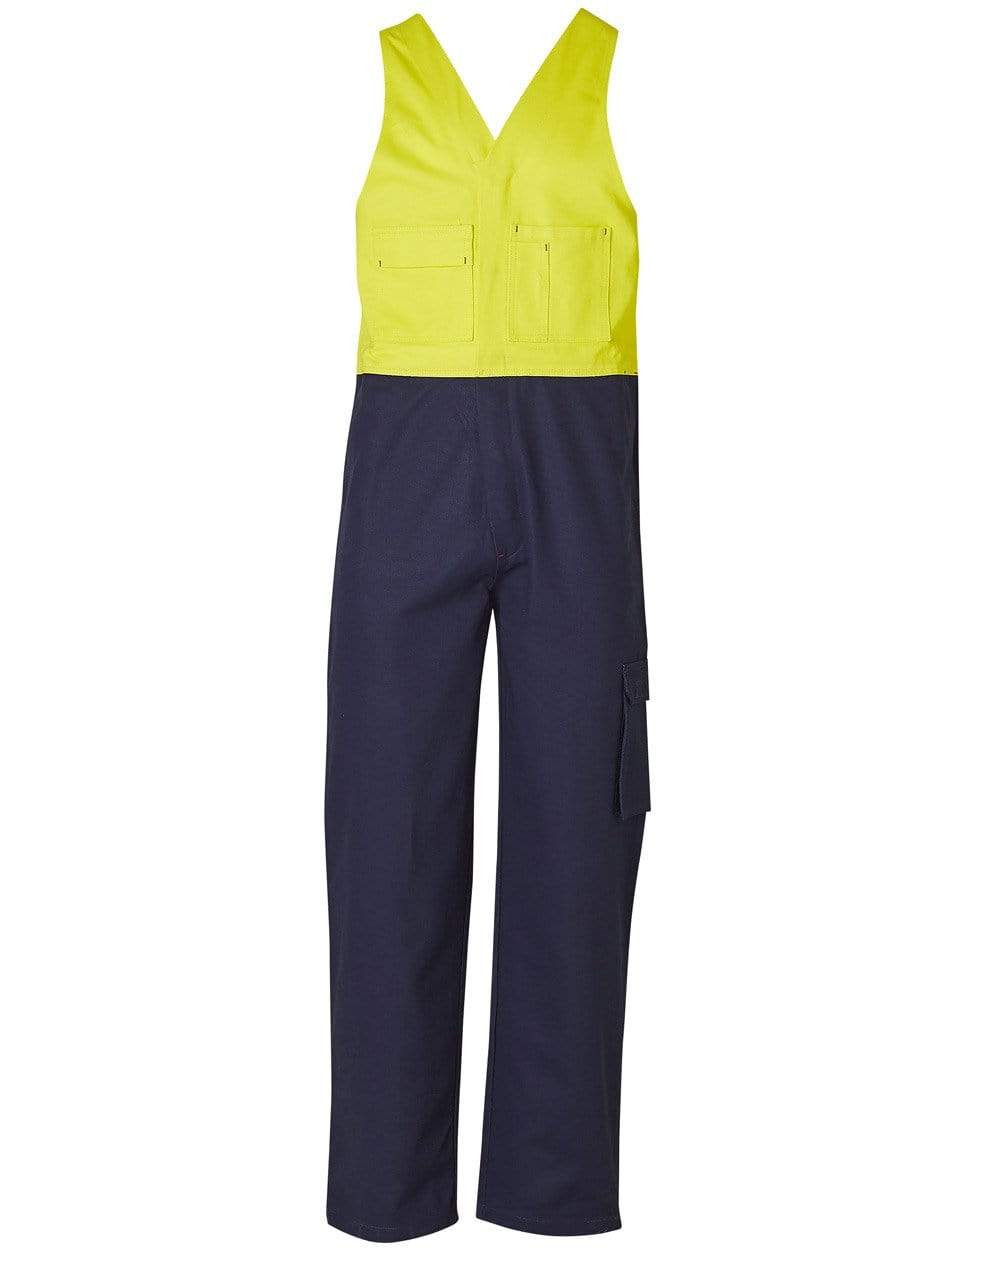 Men's Overall Stout Size SW202 Work Wear Australian Industrial Wear 87S Fluoro Yellow/Navy 